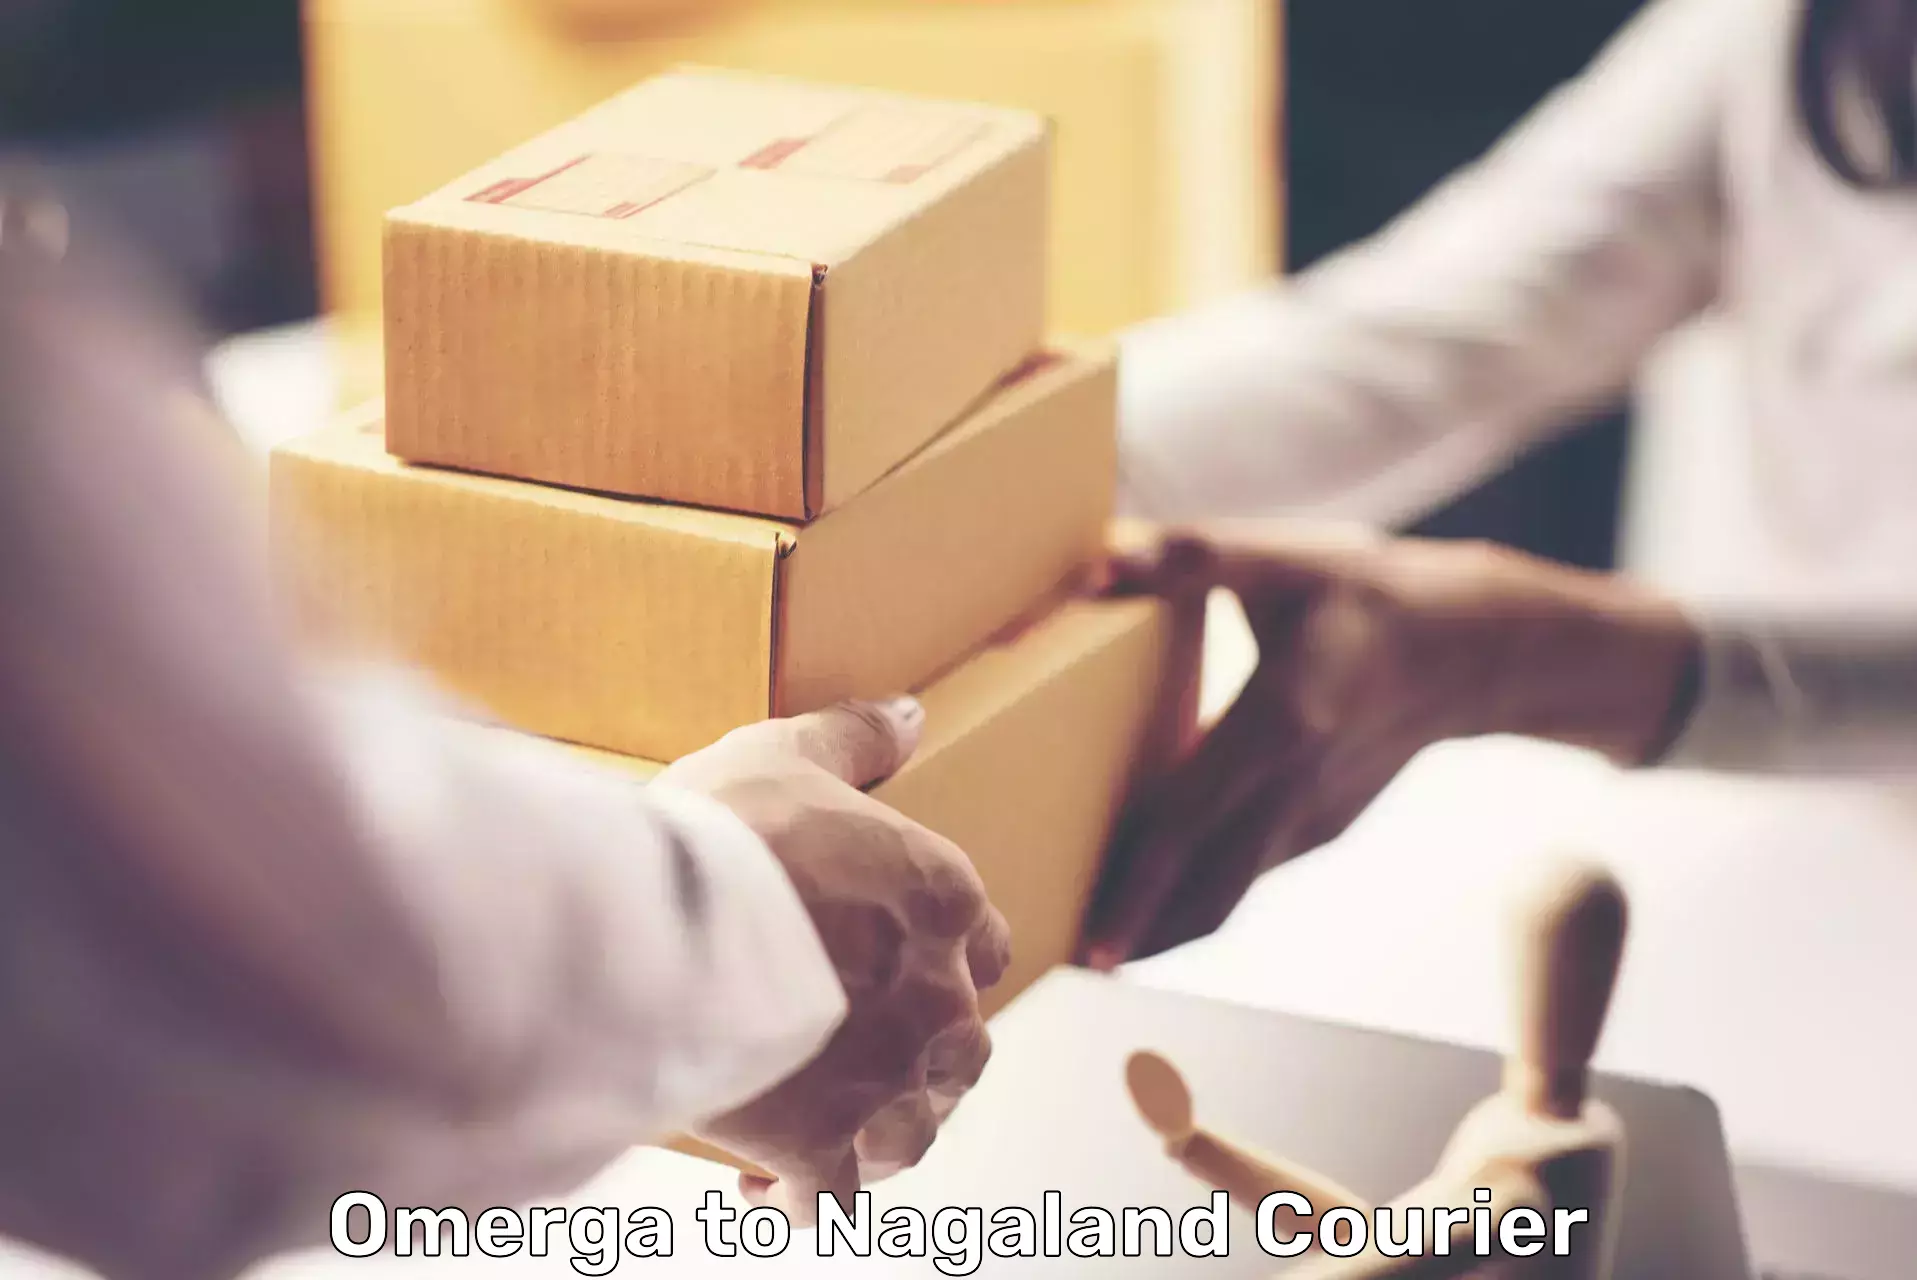 Bulk courier orders Omerga to Mokokchung